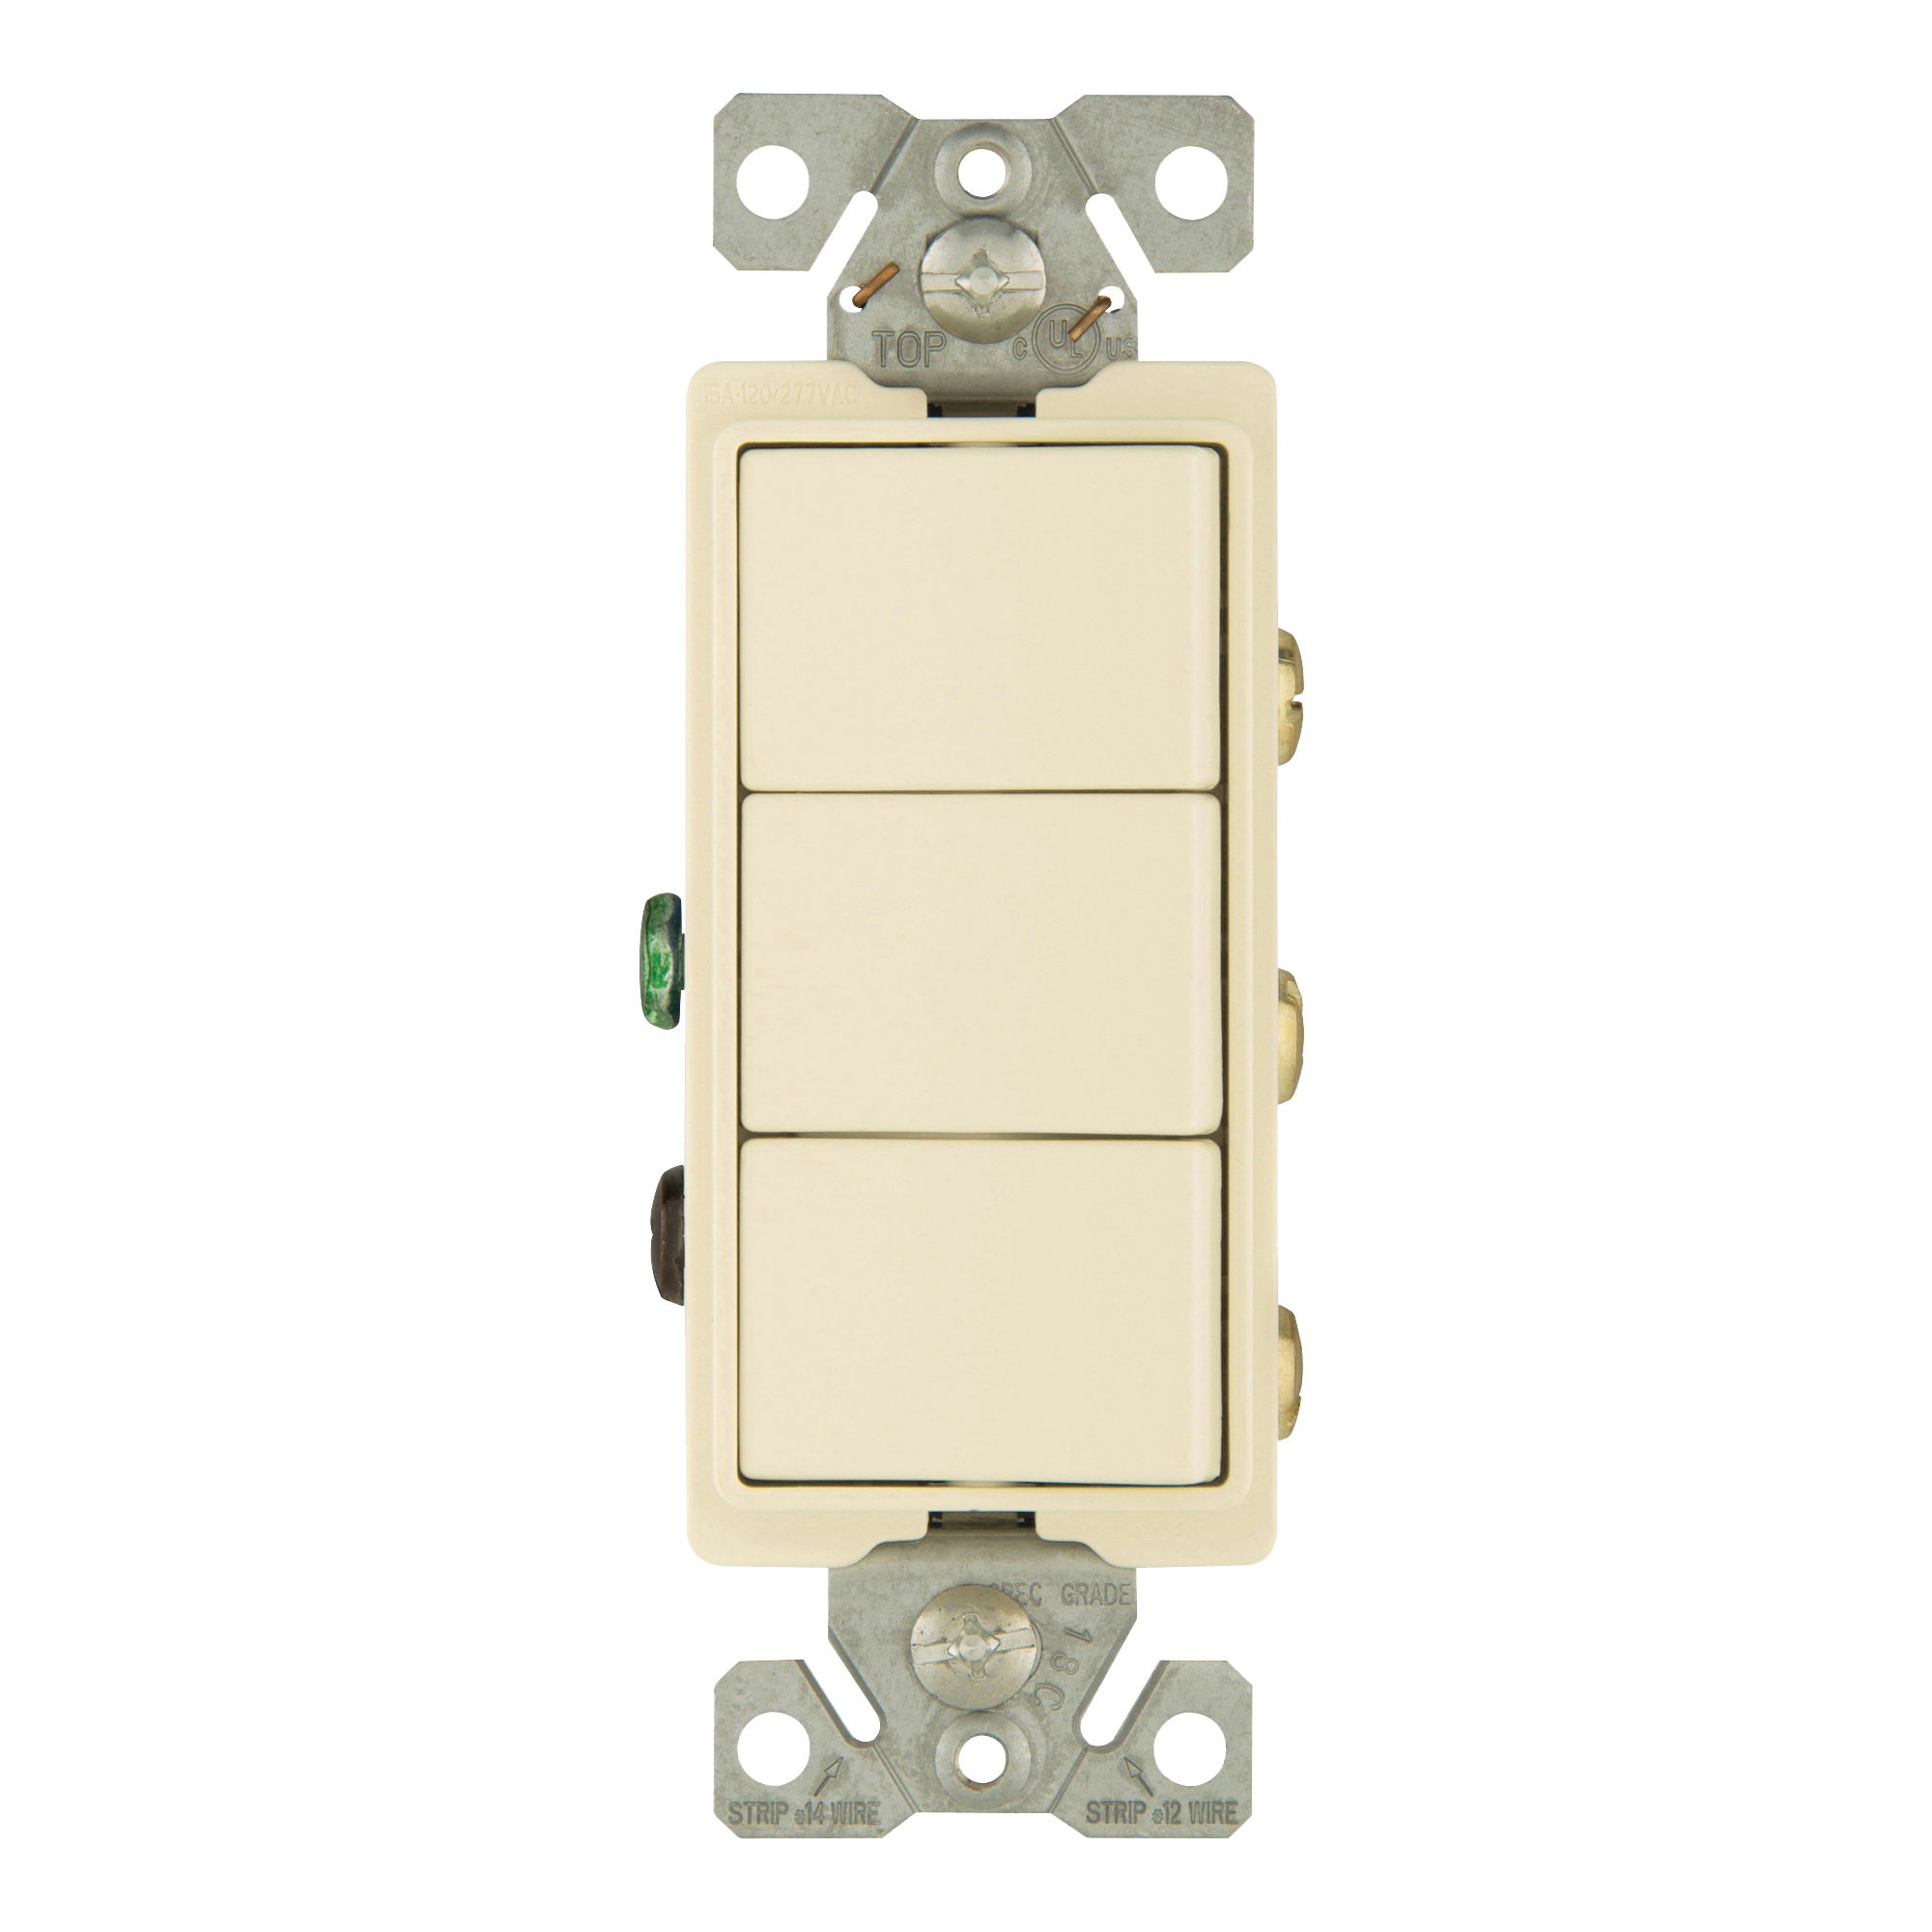 7729LA-SP Combination Switch, 1 -Pole, 15 A, 120/277 V, Light Almond